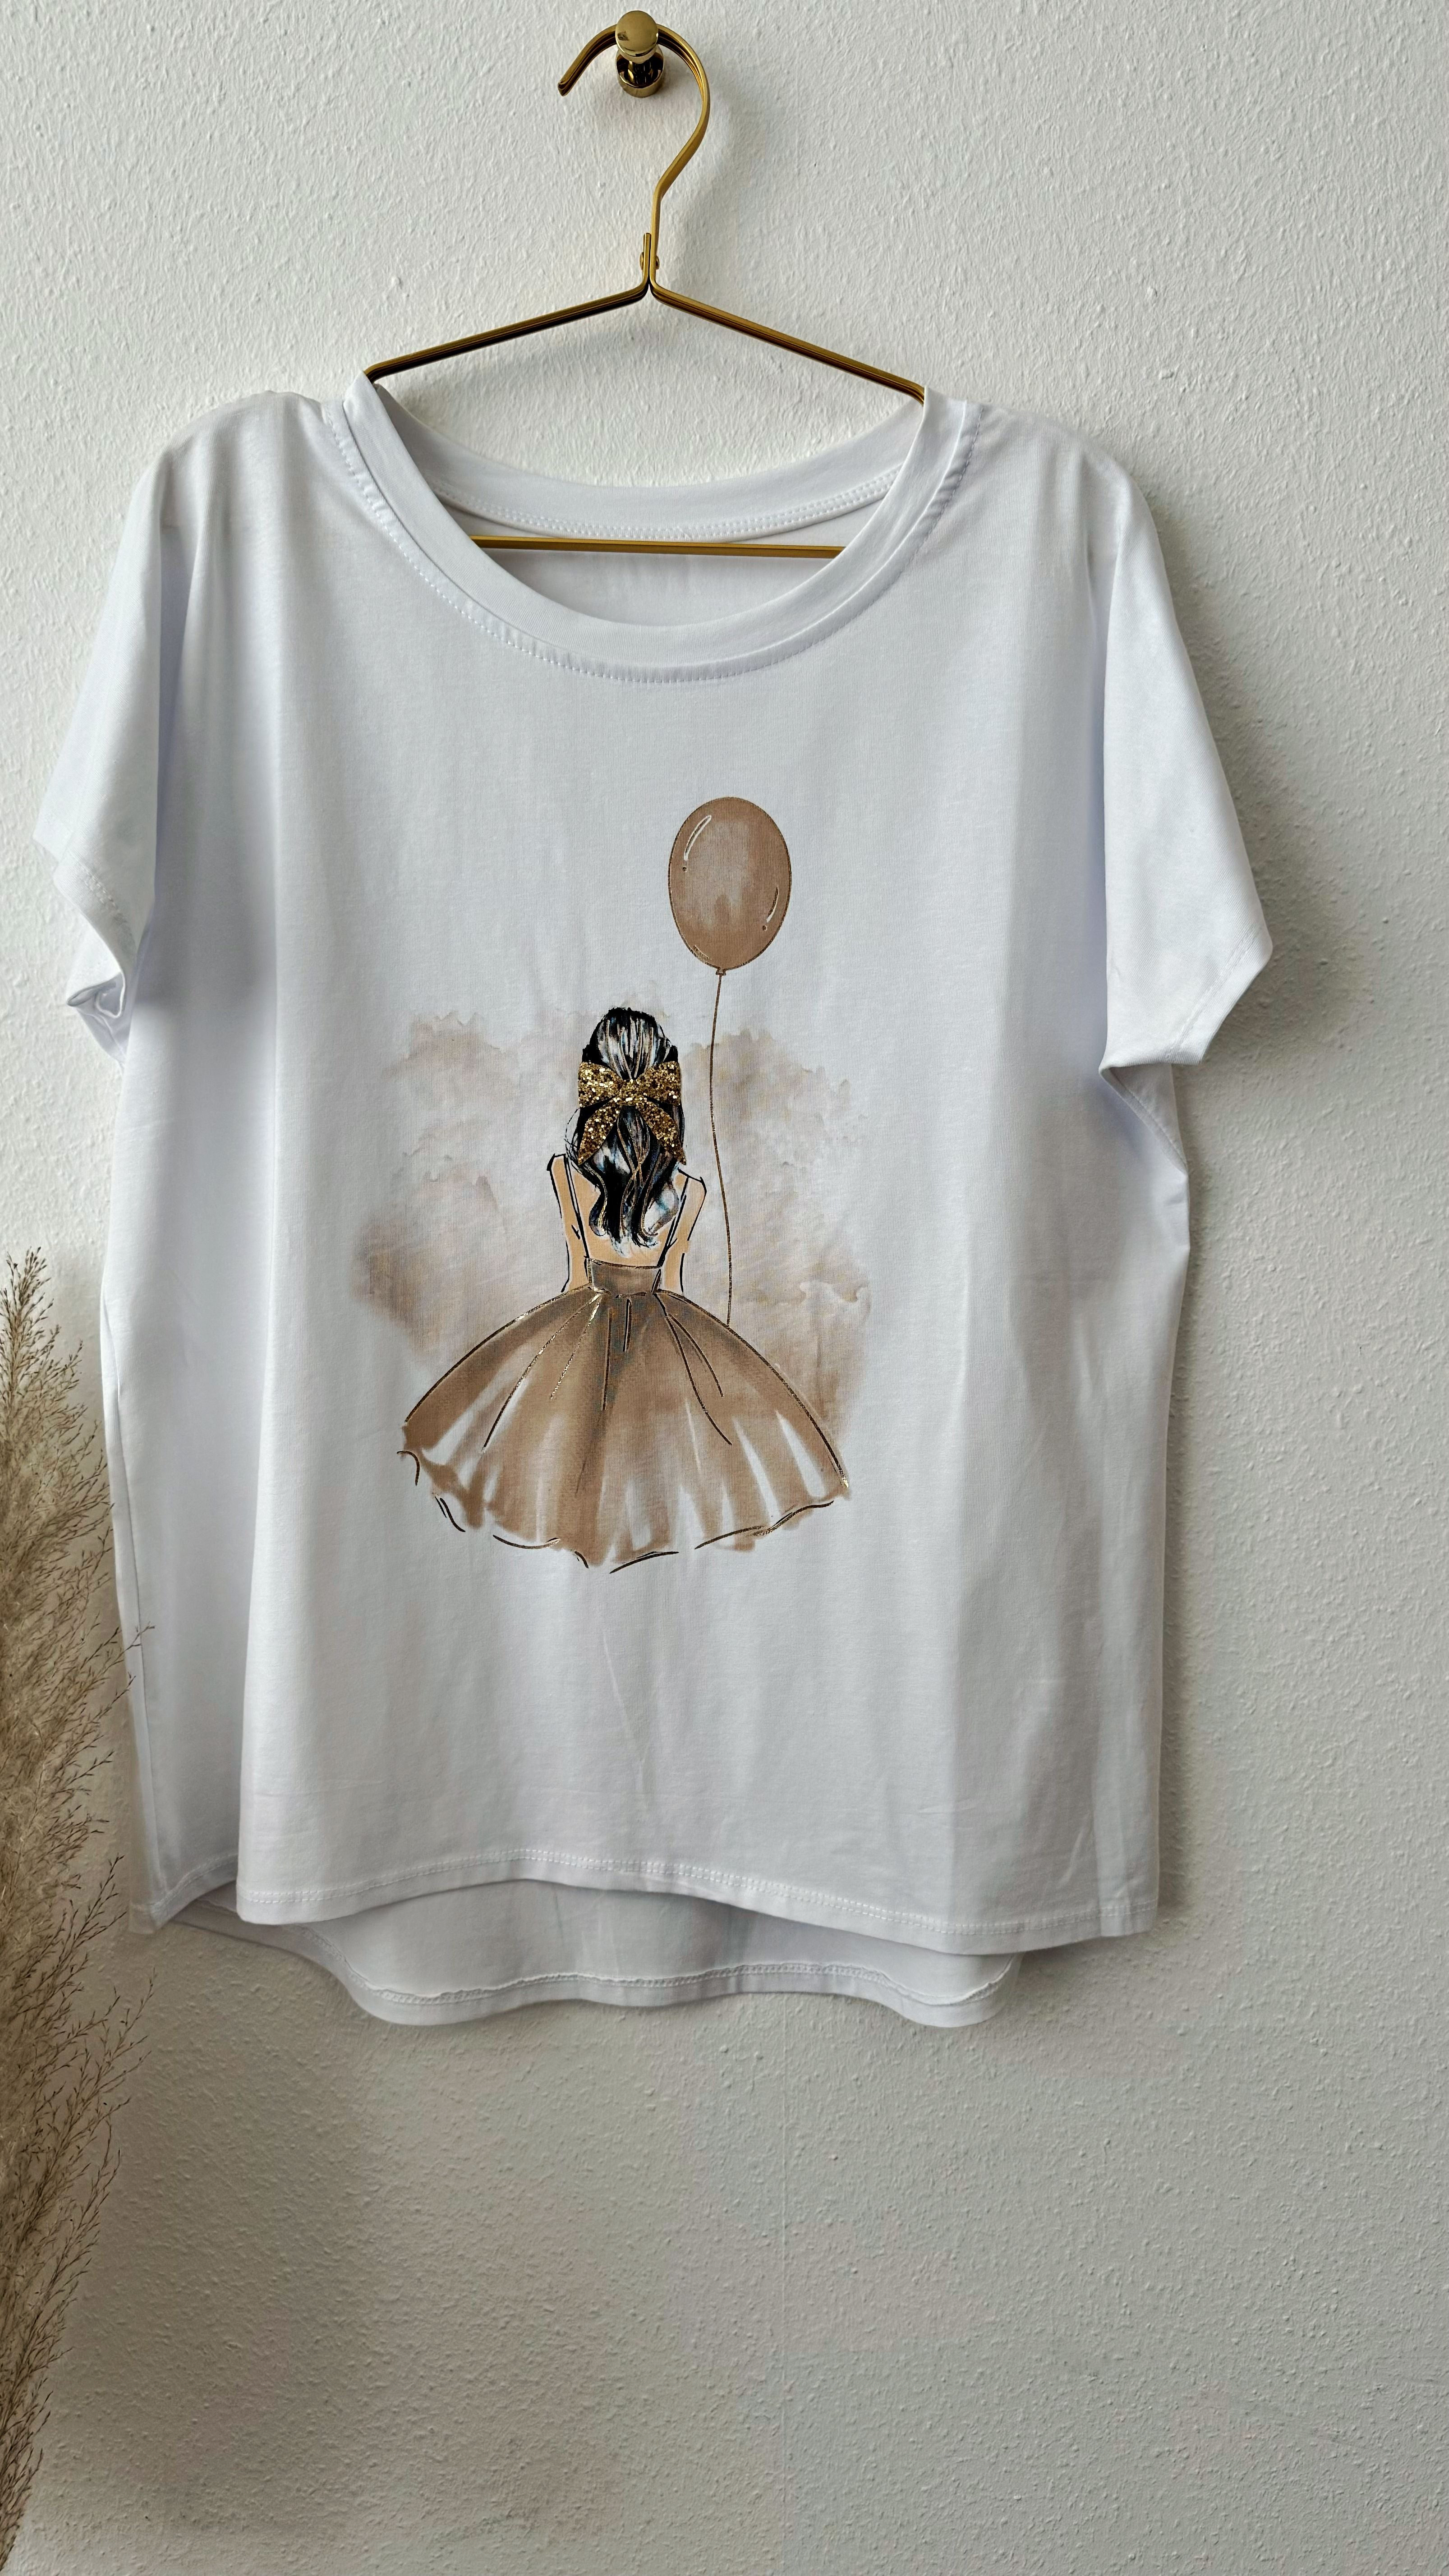 T-Shirt Ballerina con Palloncino